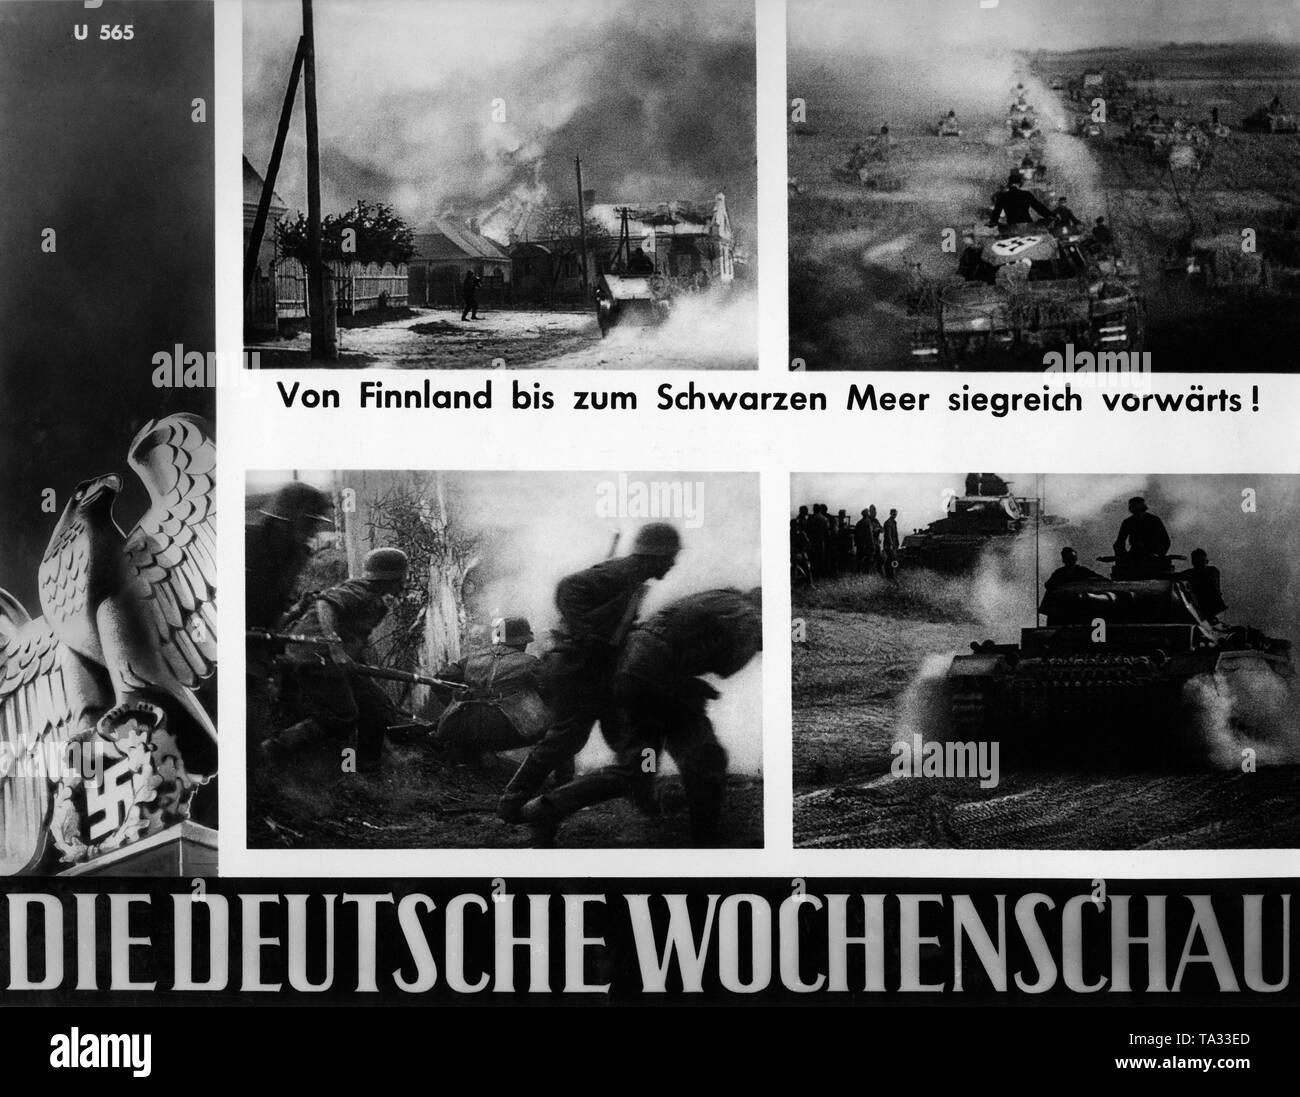 Bilder der Deutschen Wochenschau zu Beginn der Russischen Kampagne: Burning russischen Dorf (oben links), Deutsche Panzerkolonne (oben rechts), Deutsche Infanterie in der Schlacht (unten links), deutsche Panzer III (rechts unten). Stockfoto